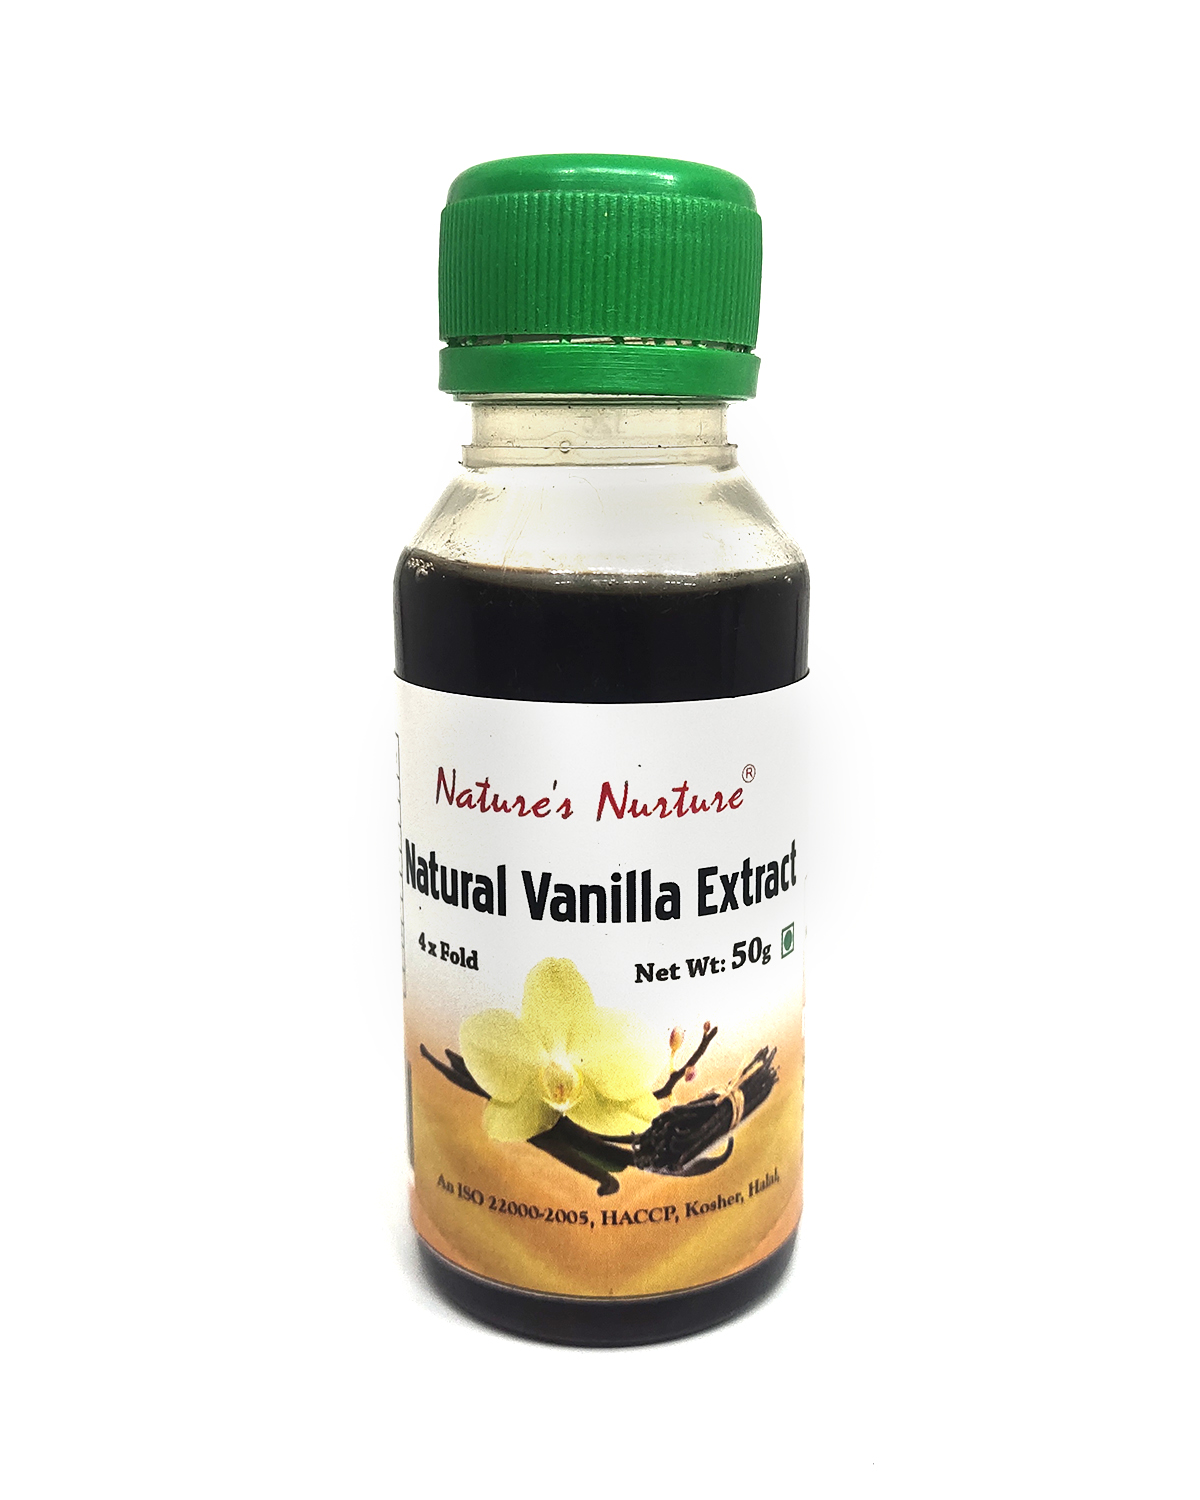 NaturesNurture Vanilla Extract 4 fold 50gm 1